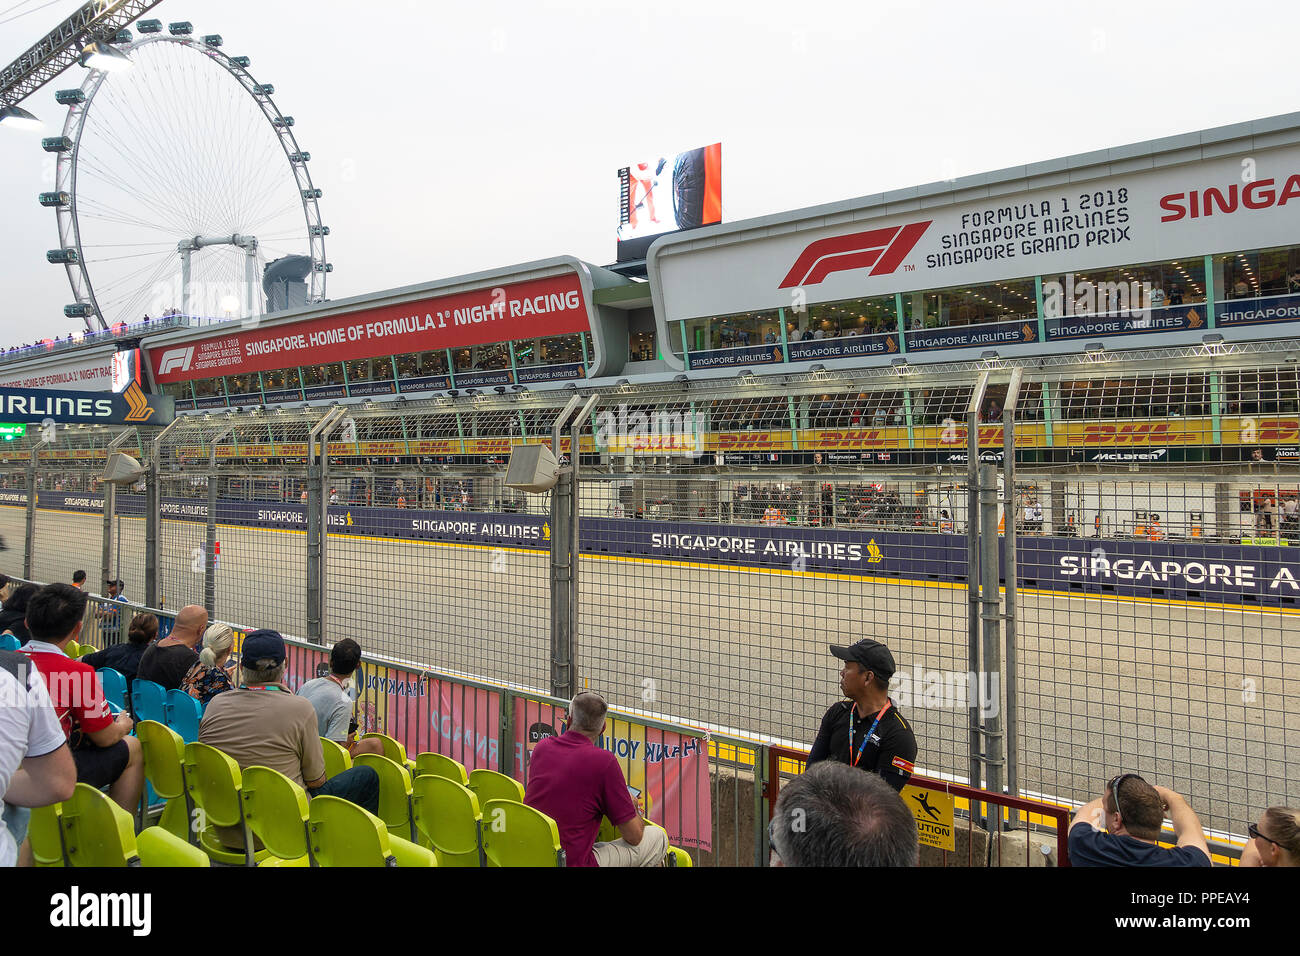 La grande roue Singapore Flyer appelé le long avec des gradins de la fosse à la formule un Grand Prix 2018 de Singapour République de Singapour Asie Banque D'Images